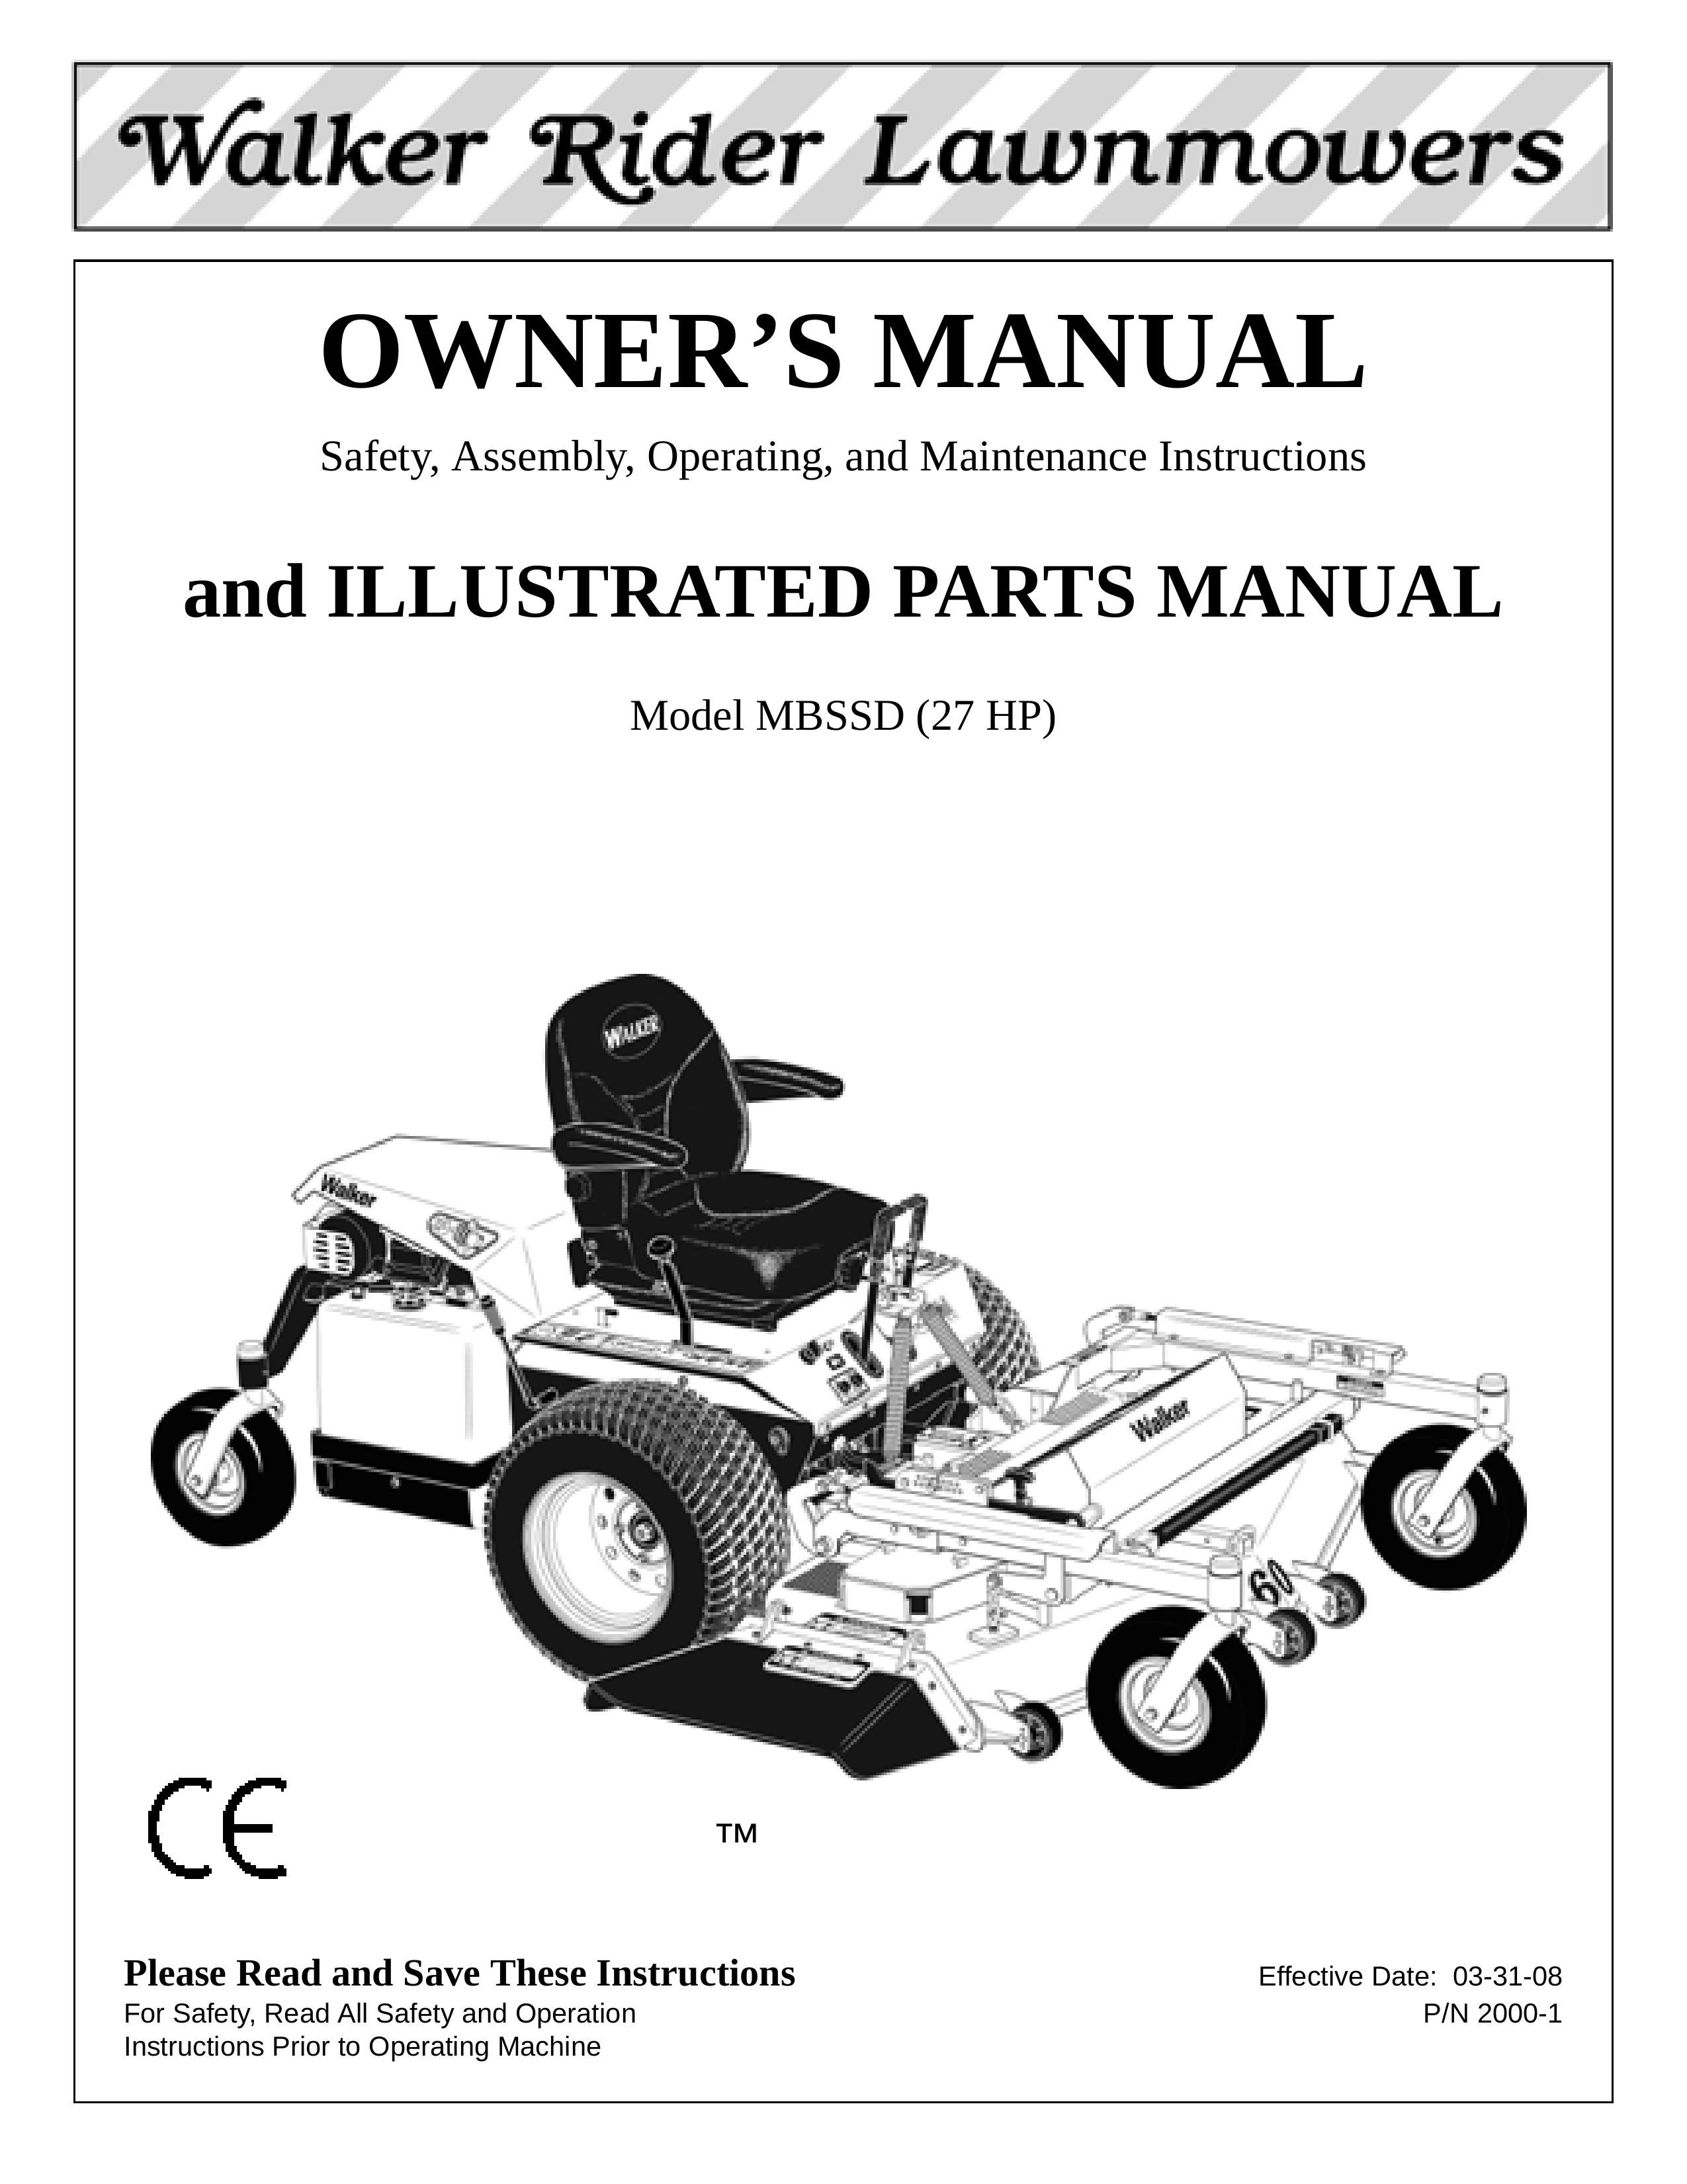 Walker MBSSD (27 HP) Lawn Mower User Manual